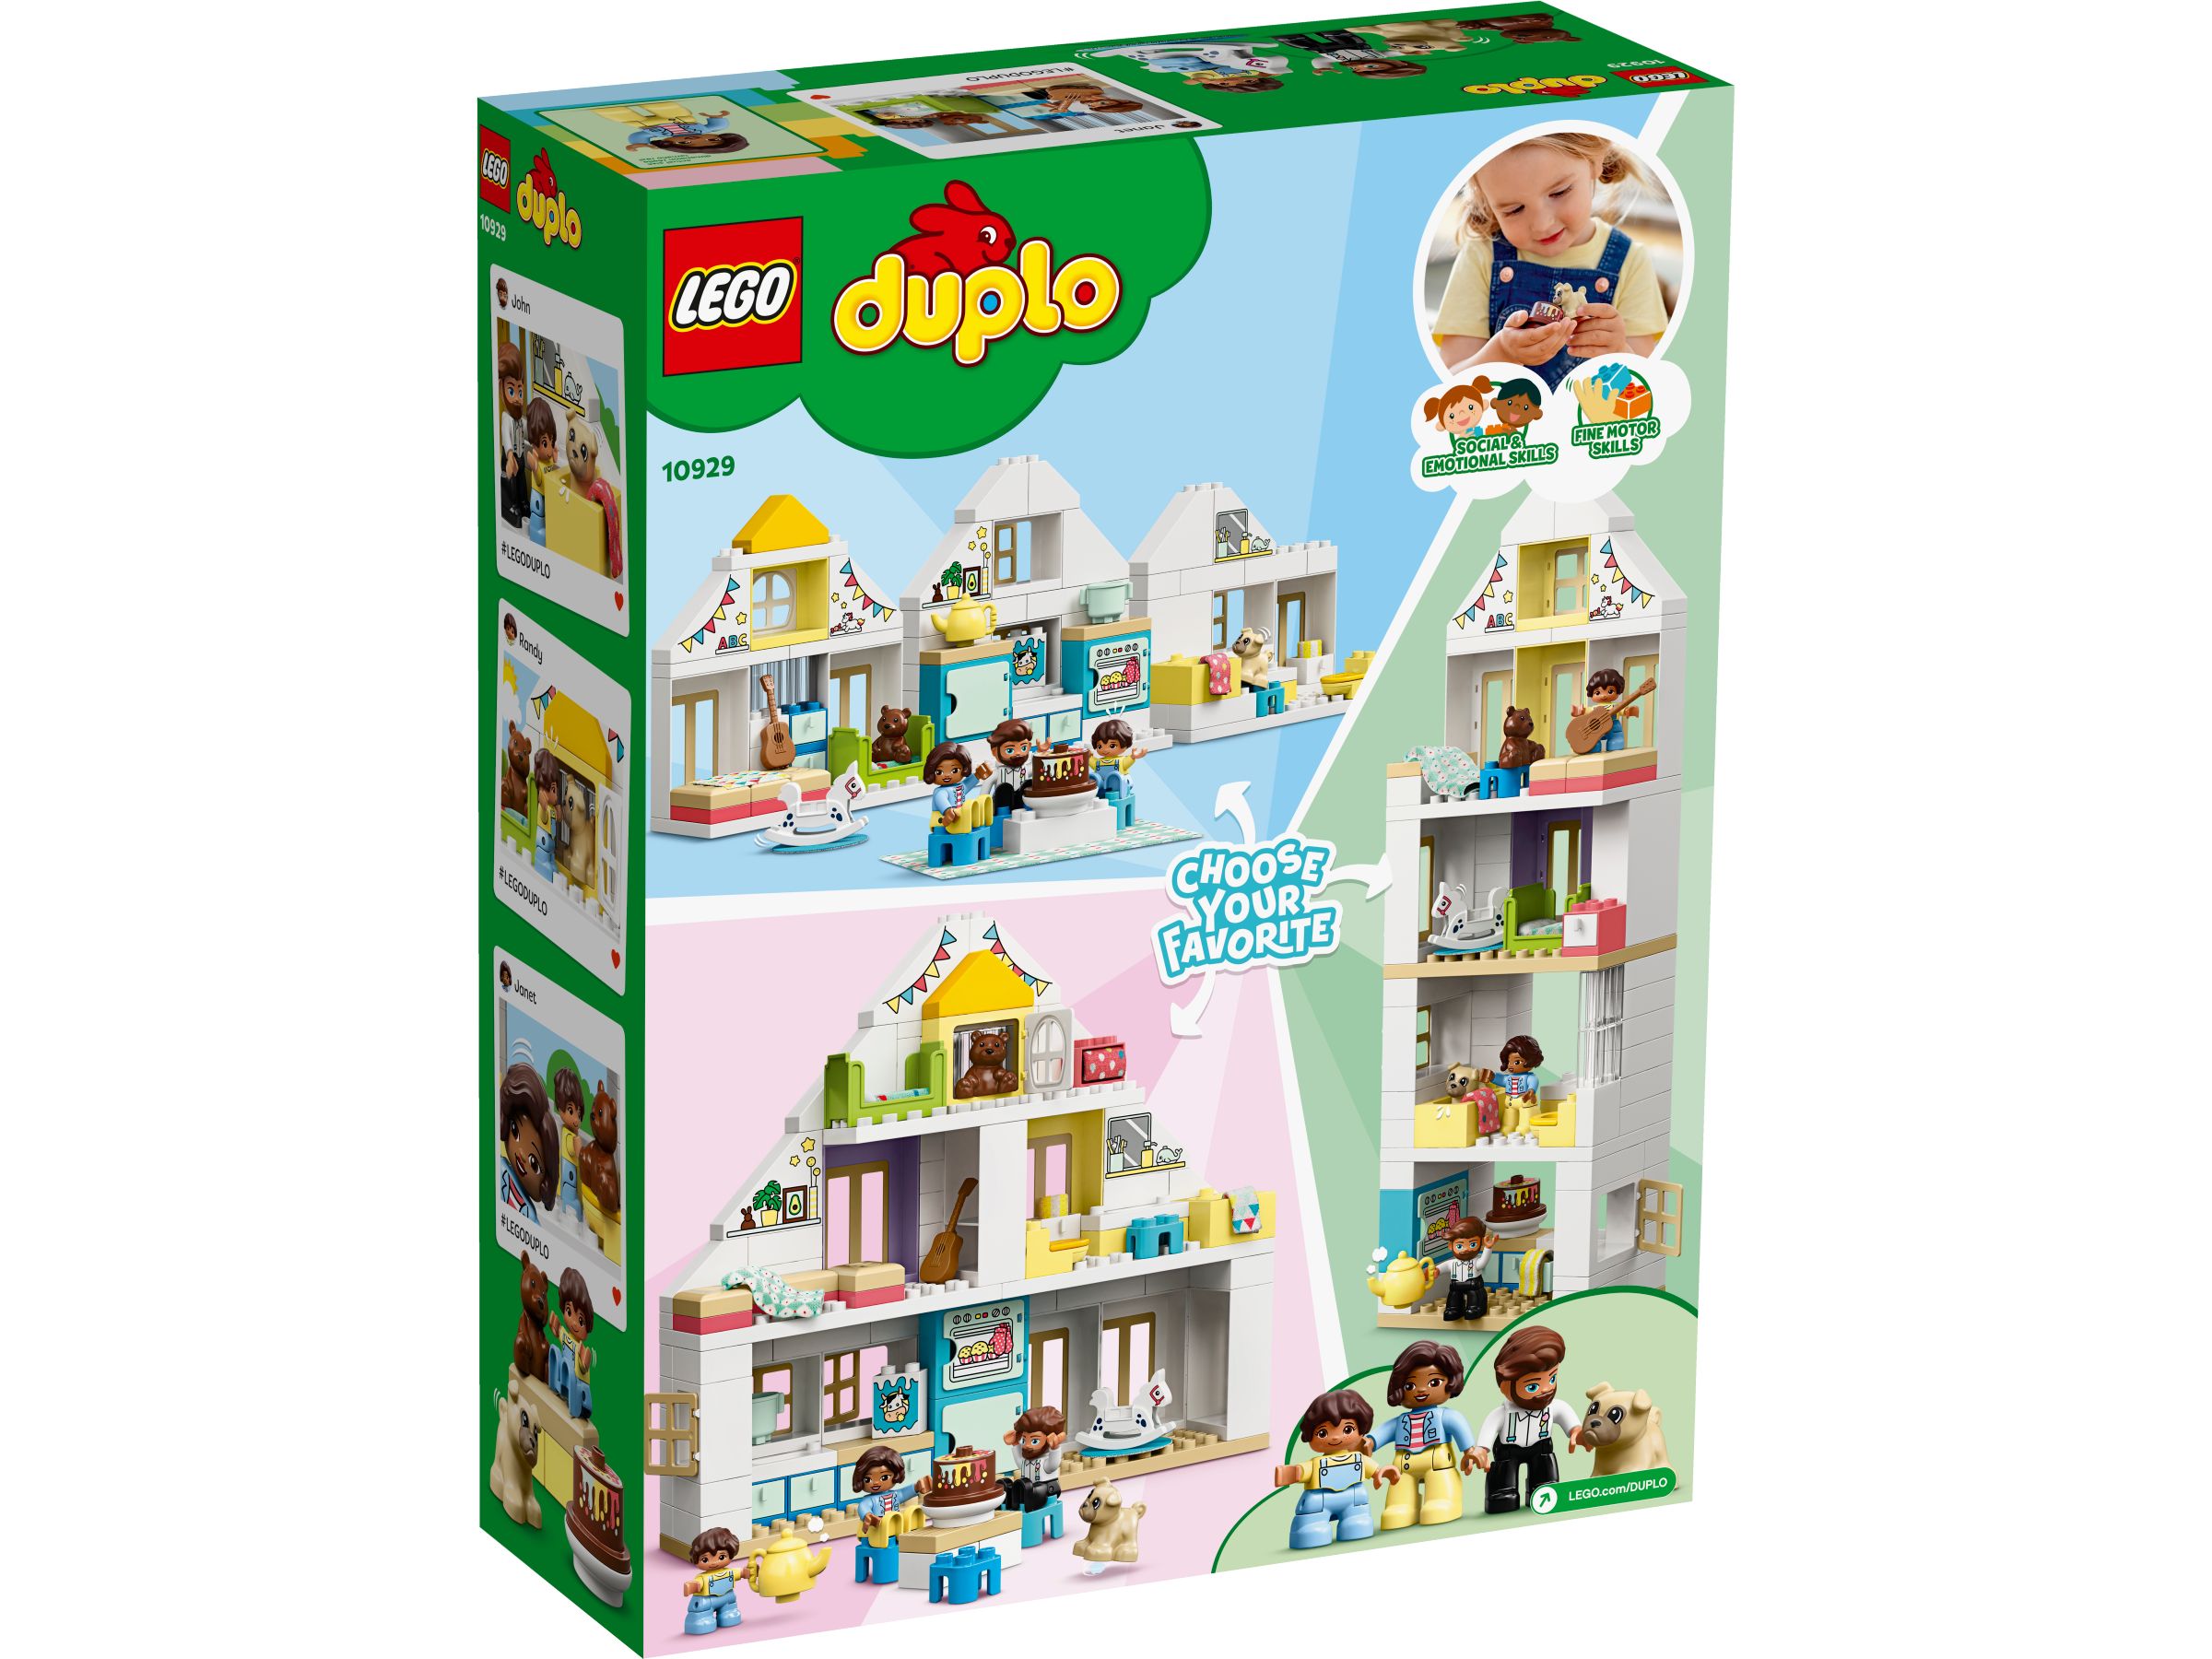 LEGO Duplo 10929 Unser Wohnhaus LEGO_10929_alt4.jpg